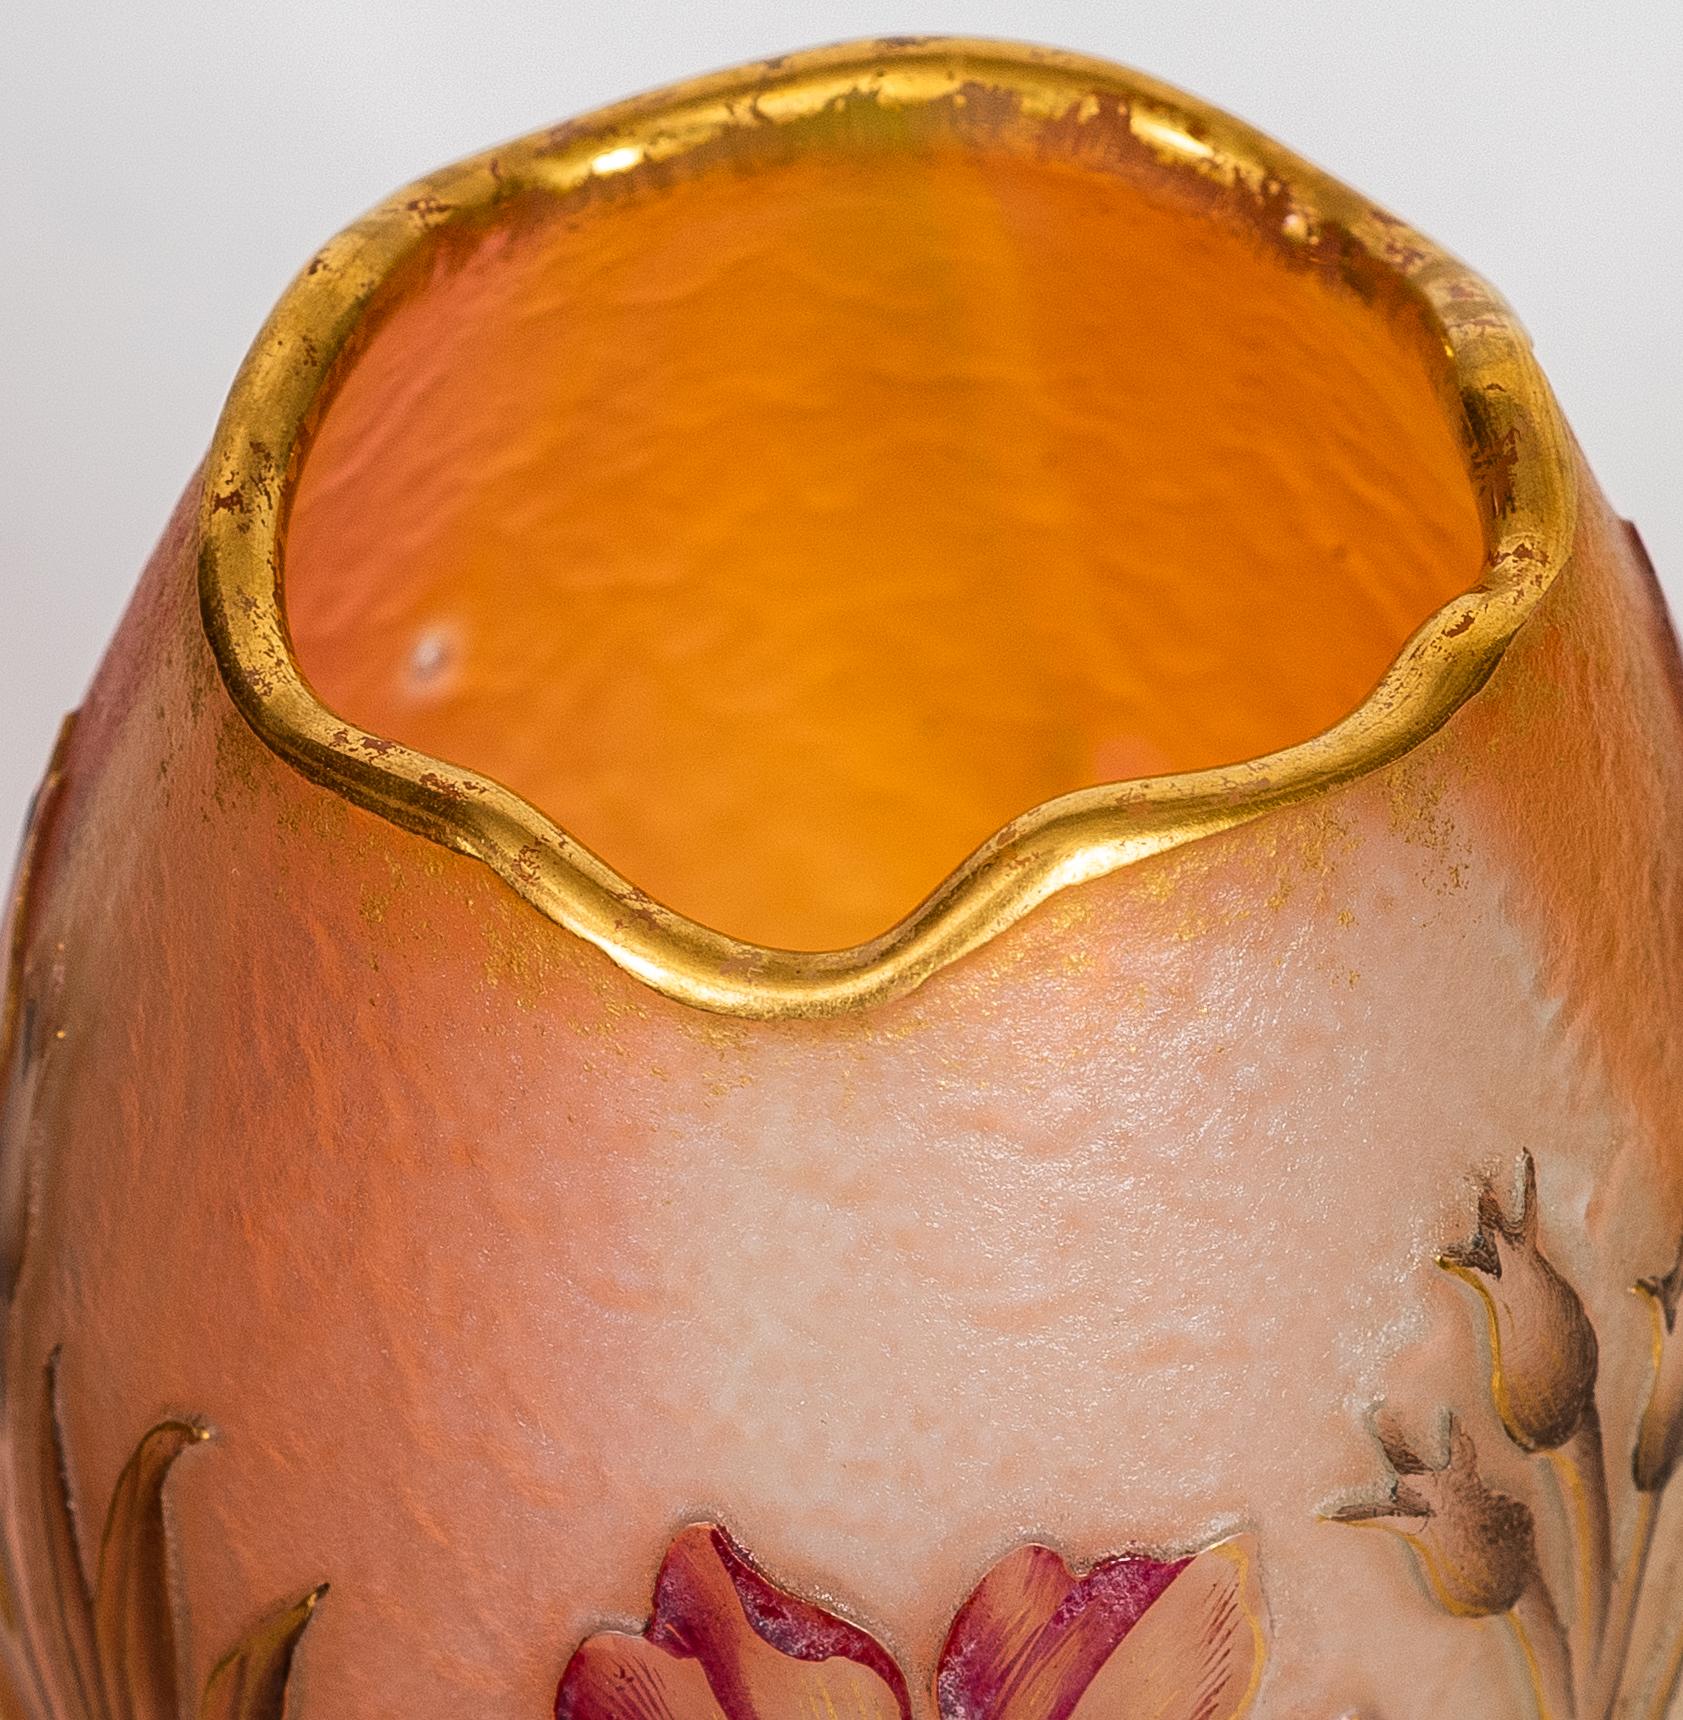 Daum Nancy Vase aus Kamee und Emaille,
Frankreich, um 1910
verziert mit roten und rosafarbenen Blumen auf einem hellen opalisierenden Grund
signiert in Gold Daum Nancy mit Lothringer Kreuz
Abmessungen:
Höhe 3 1/2 in. (8,89 cm.)
Durchmesser 2